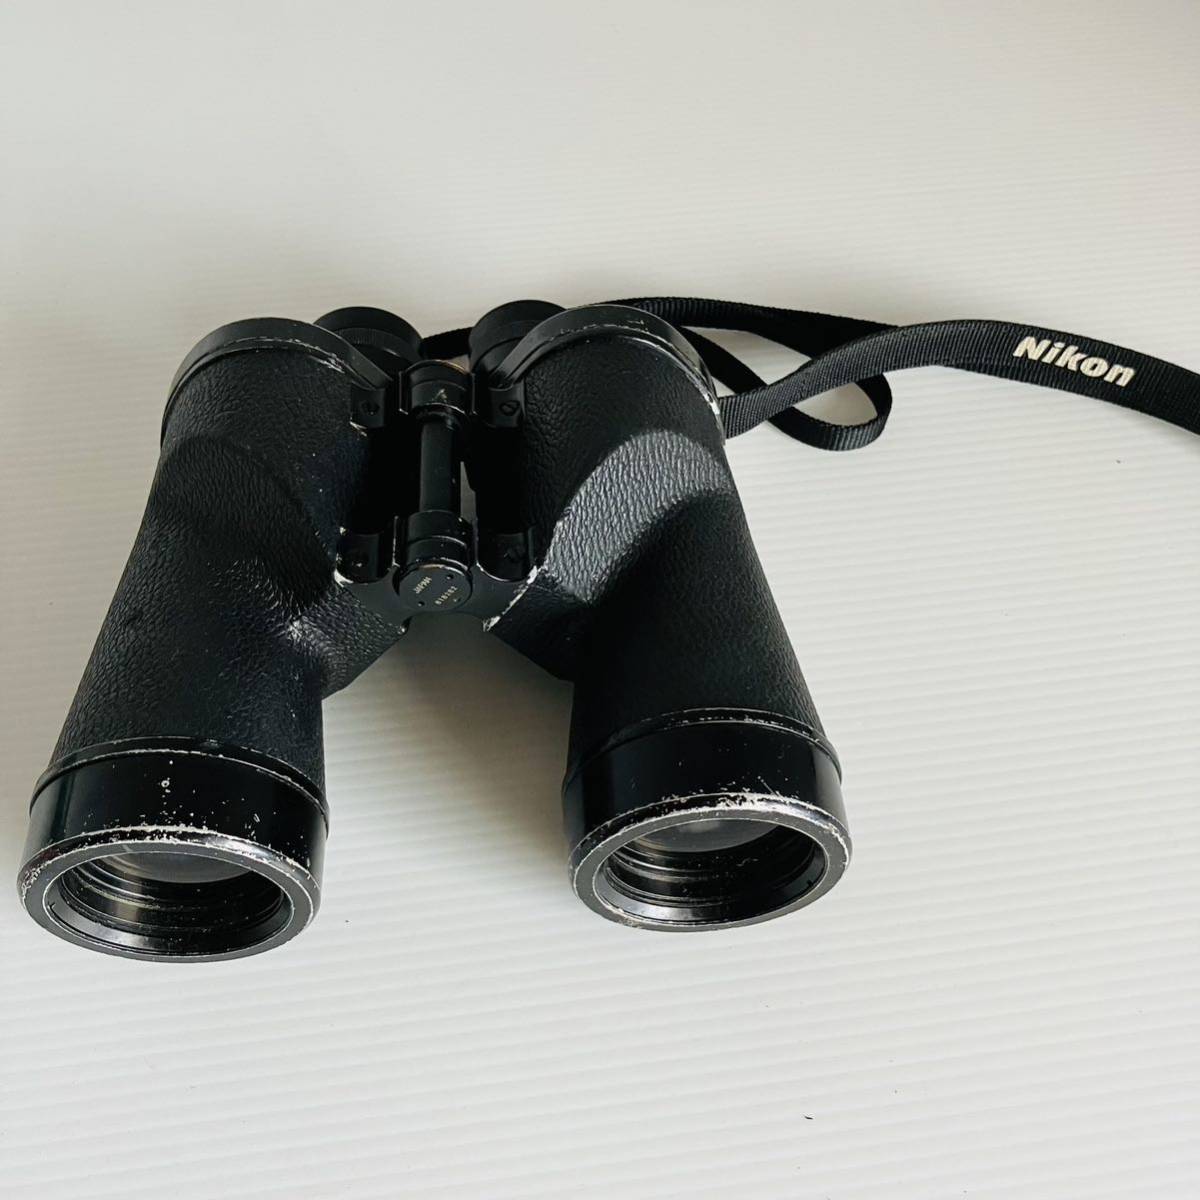 日本光学 ニコン 双眼鏡 7×50 7.3° coated Nikon-